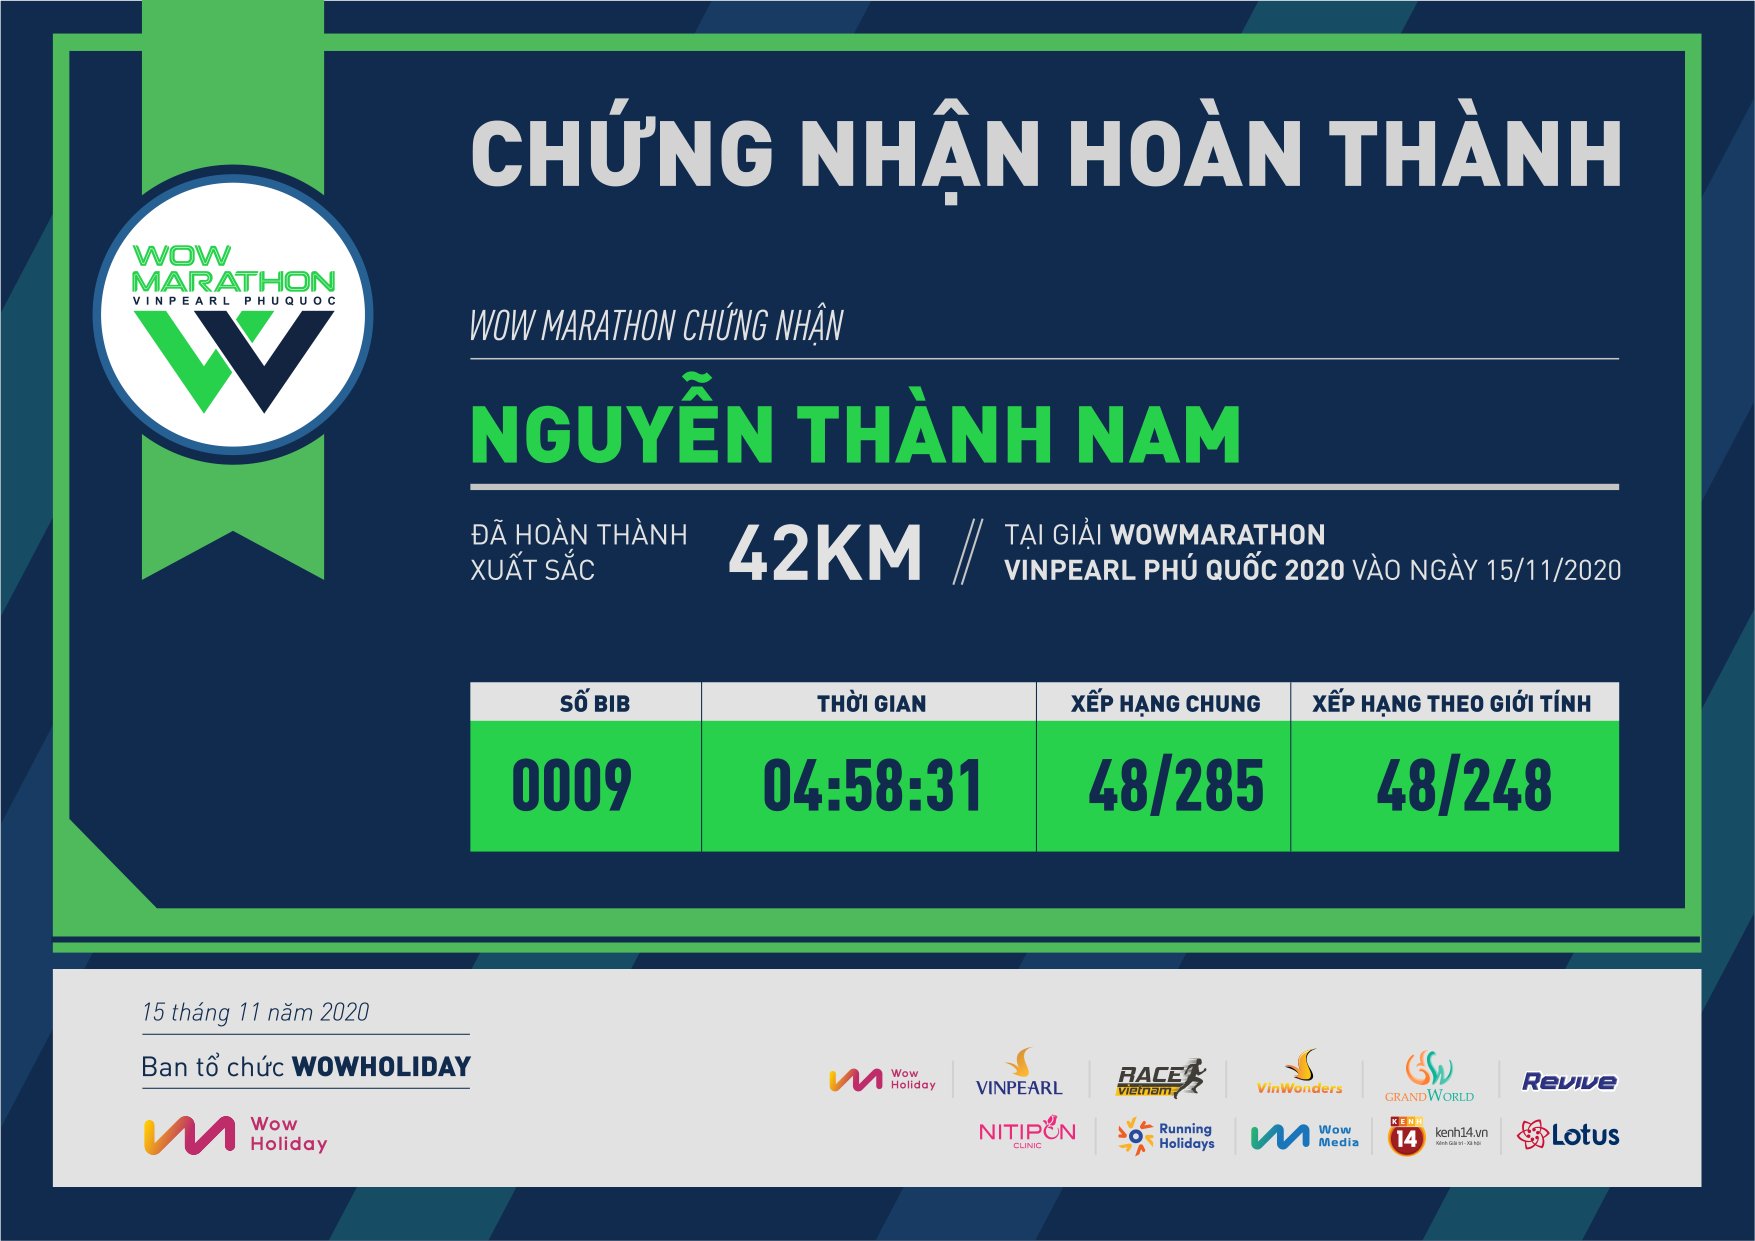 0009 - Nguyễn Thành Nam